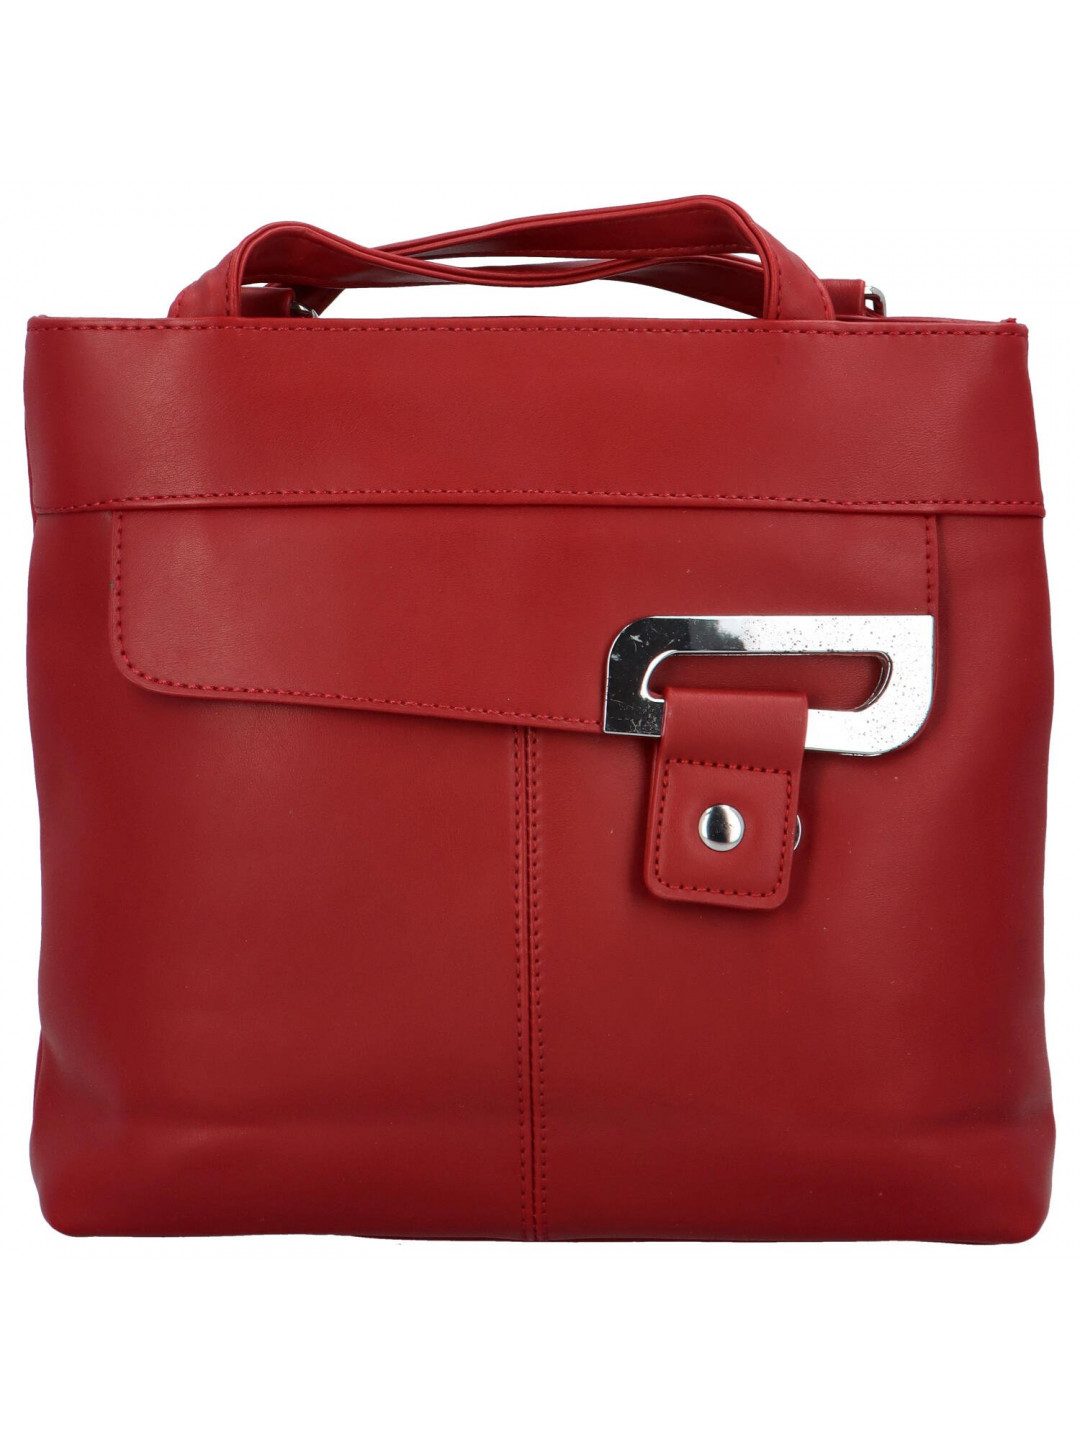 Trendy dámský koženkový kabelko-batůžek Eleana červená